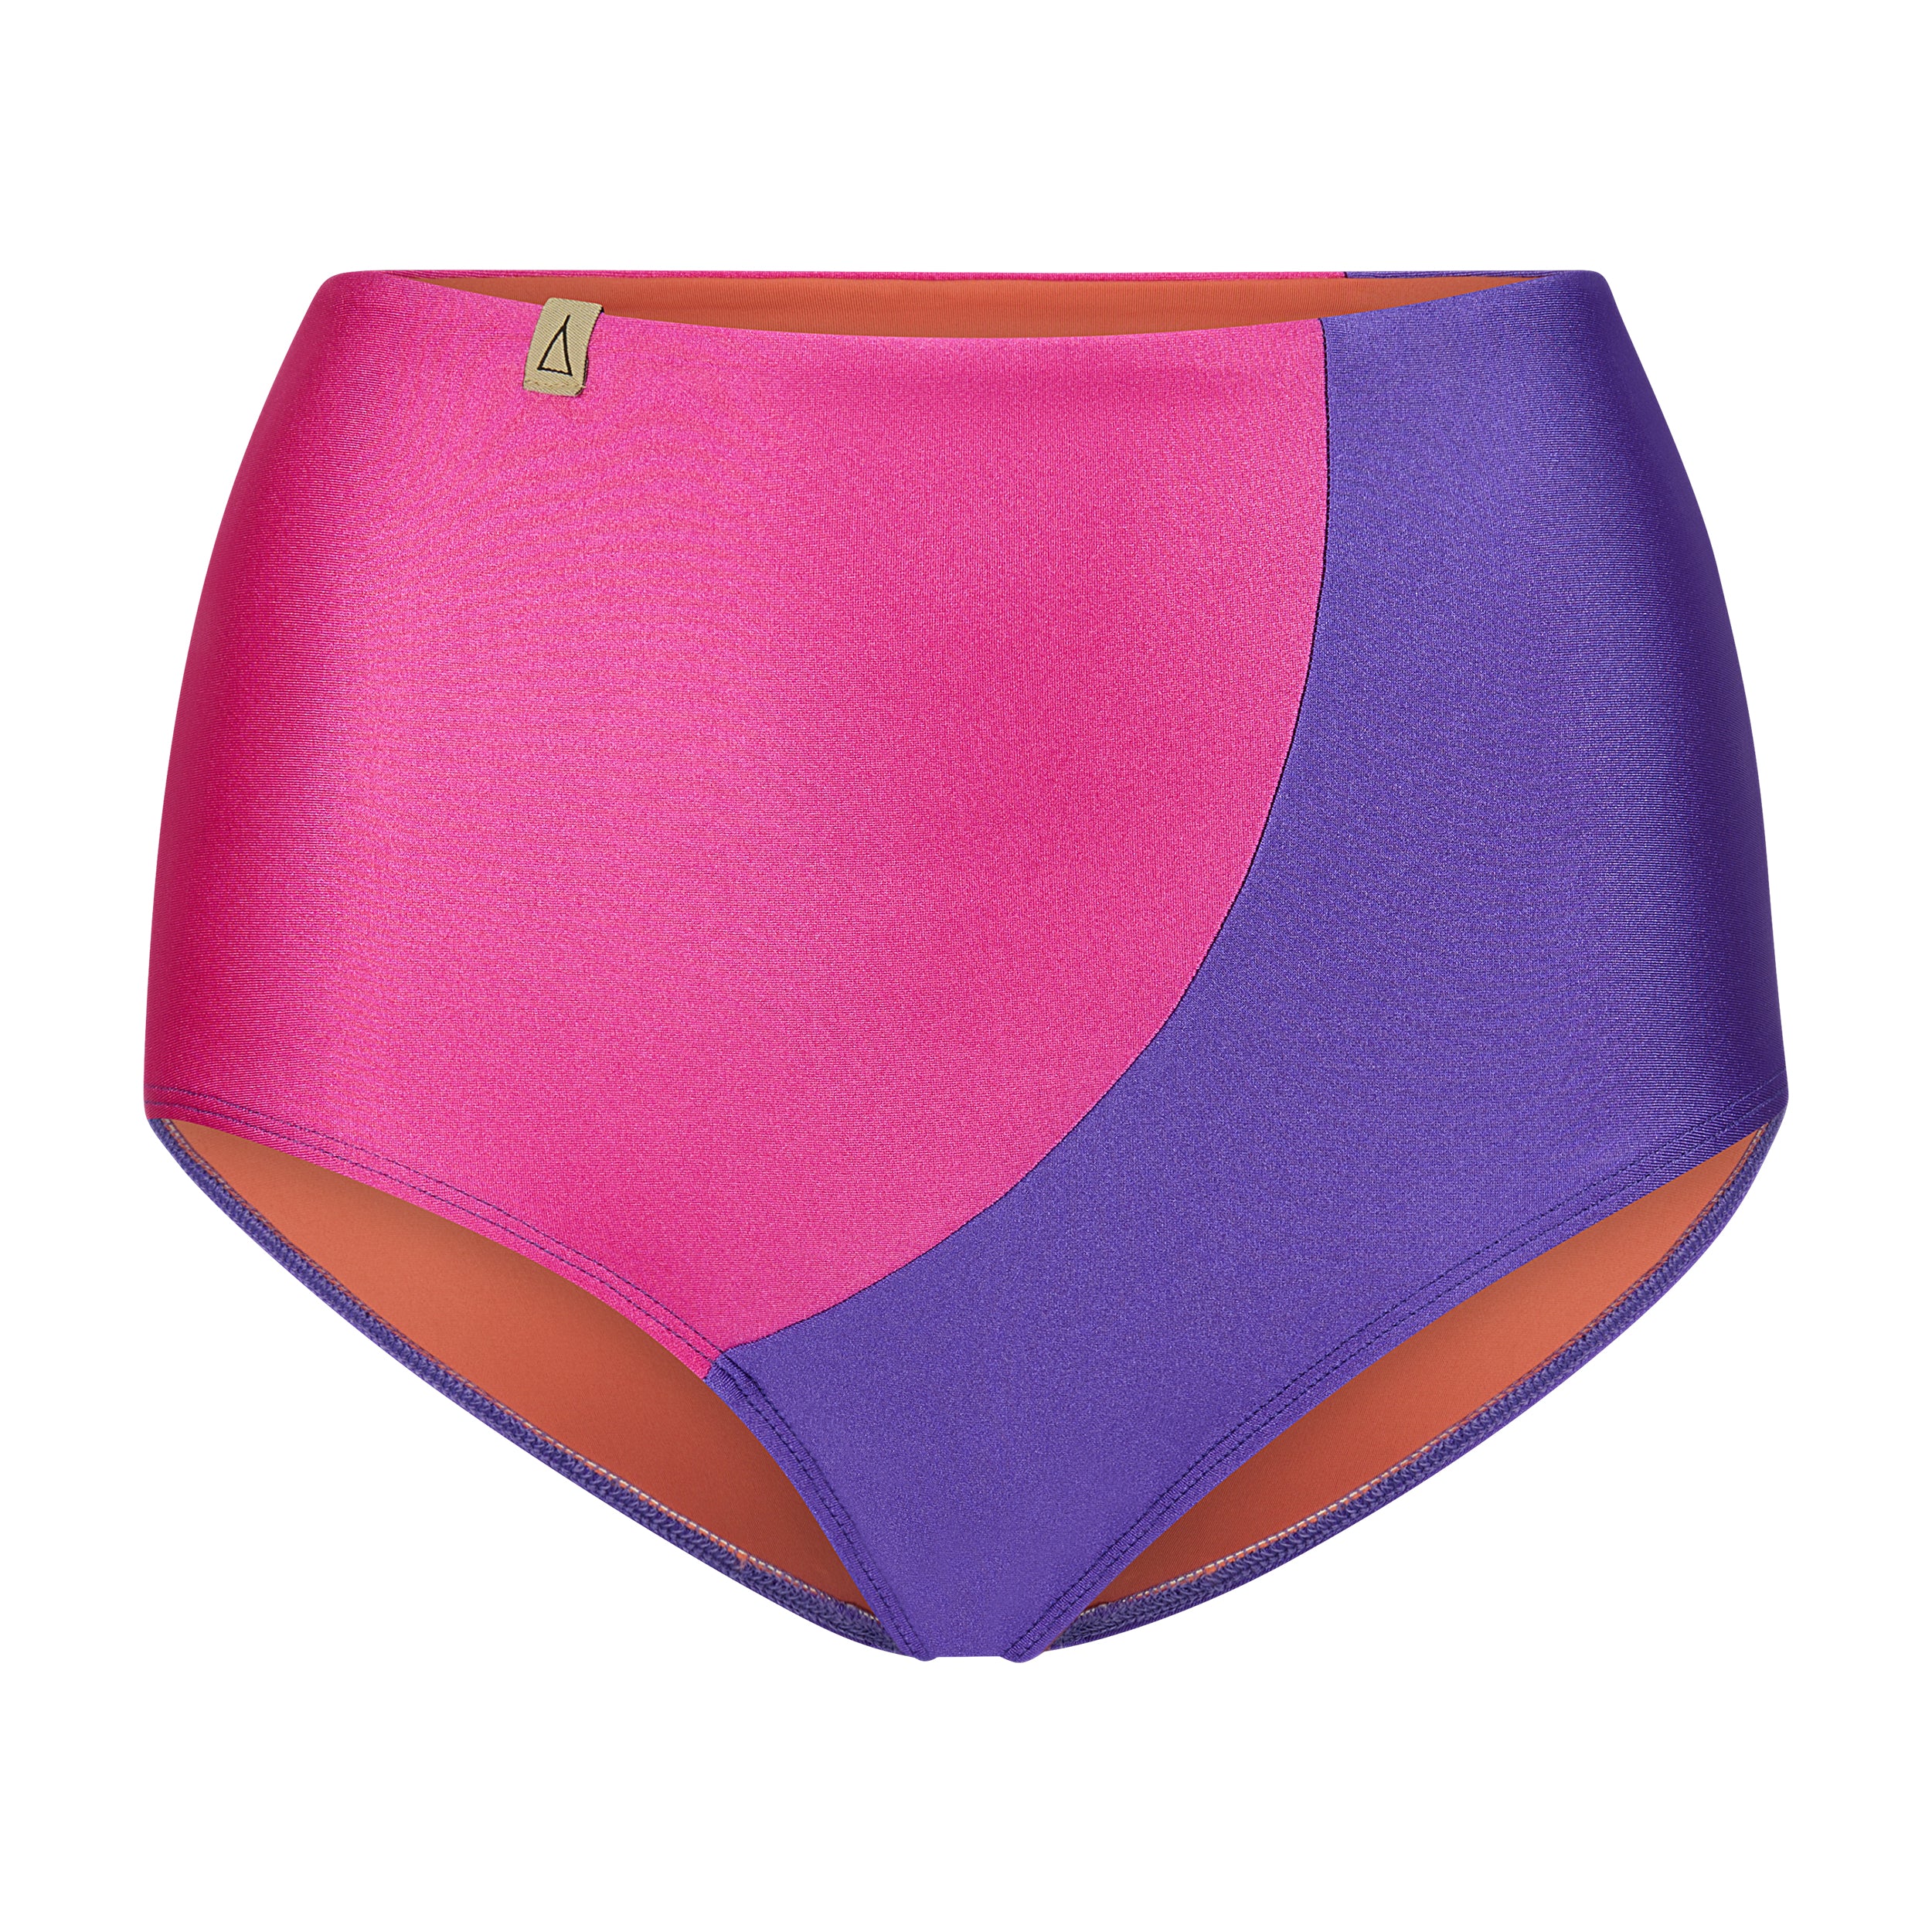 INASKA Bikini Hose Limited Edition von vorne in zwei Farben